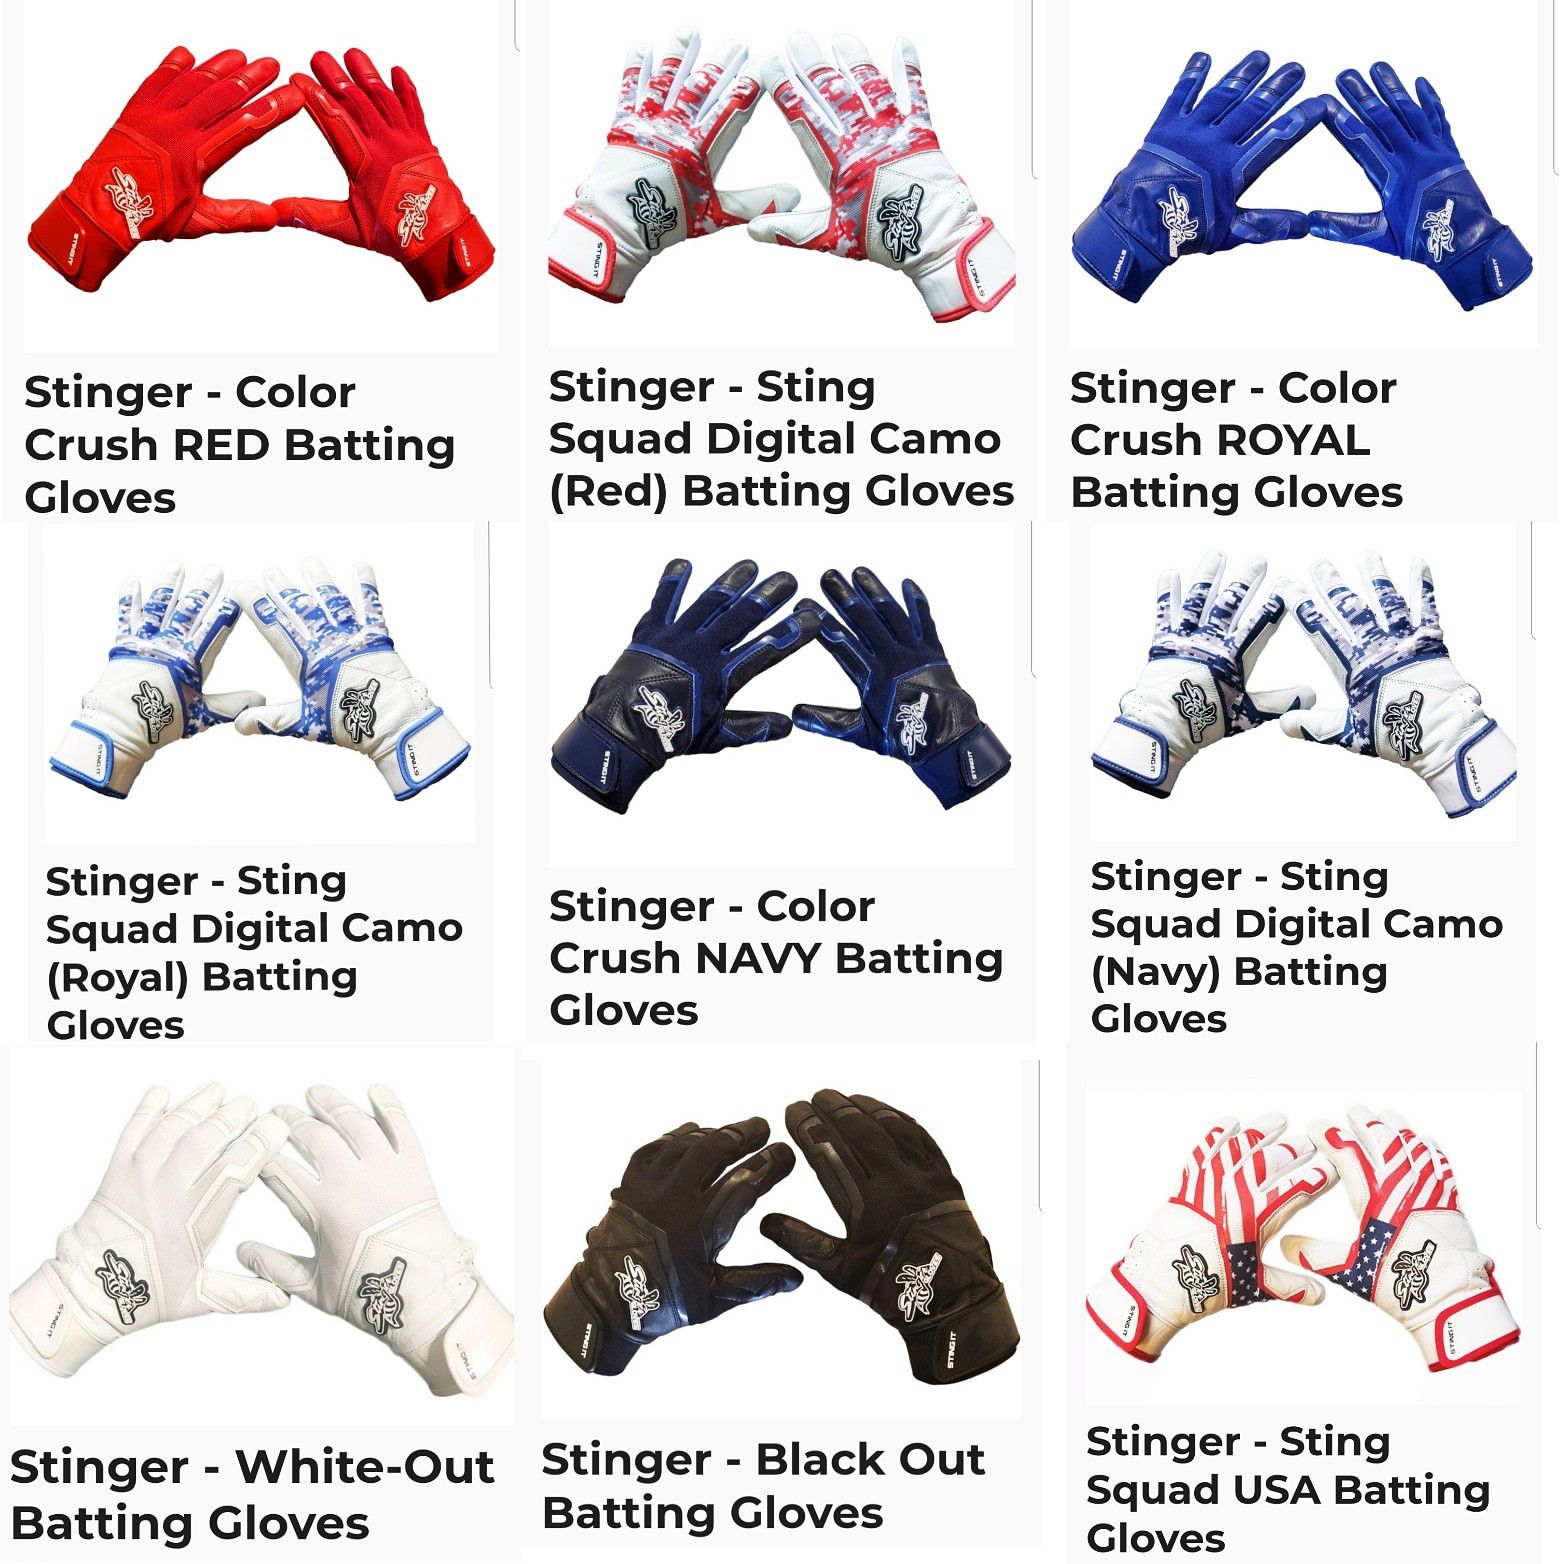 Stinger batting gloves